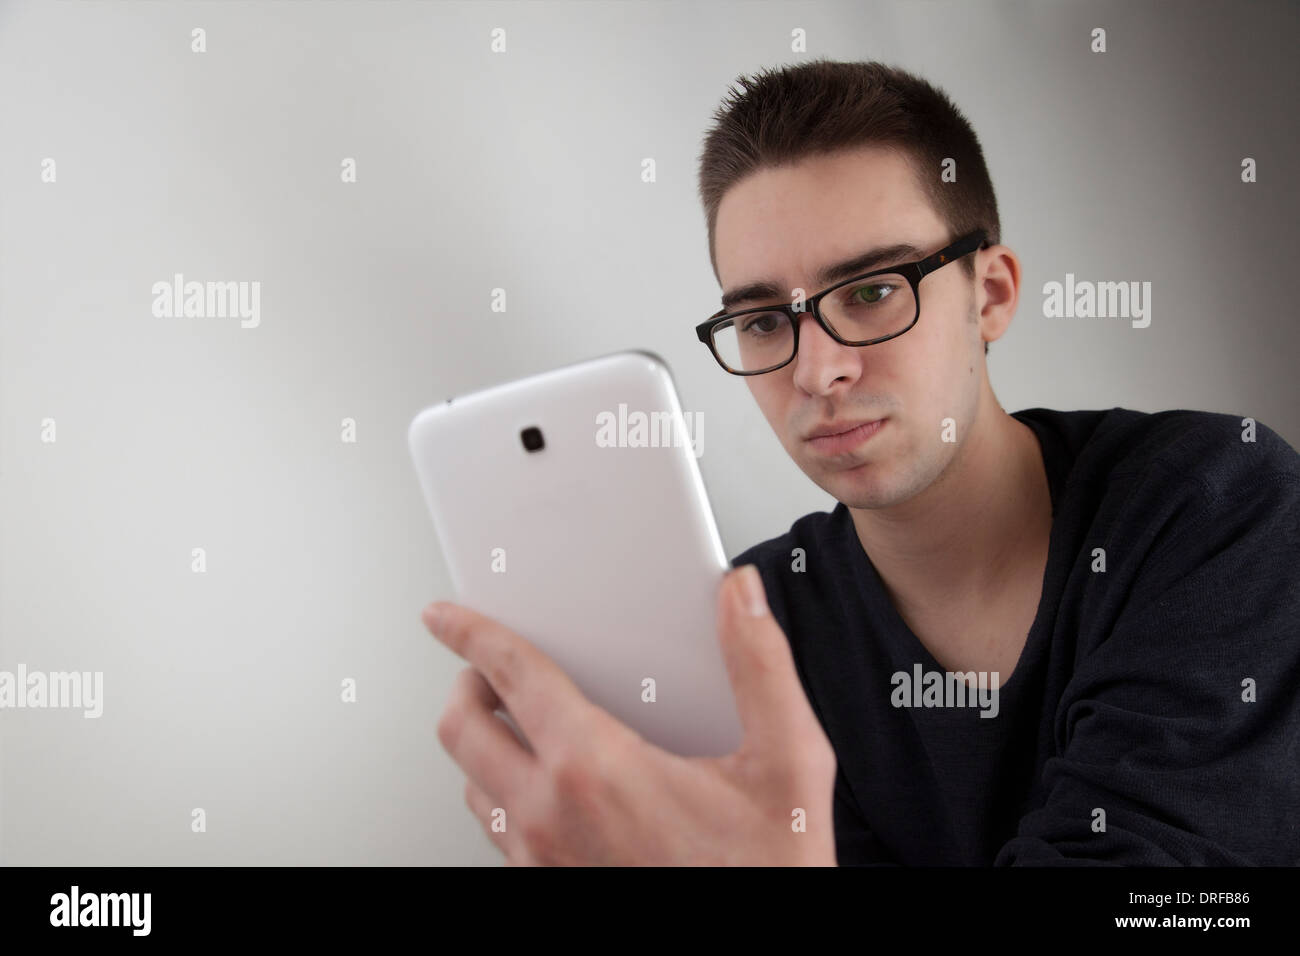 Gut aussehender junger Mann mit Brille, hält eine weiße digitale-Tablette. Form, mit textfreiraum Landschaft. junger Mann mit digita Stockfoto